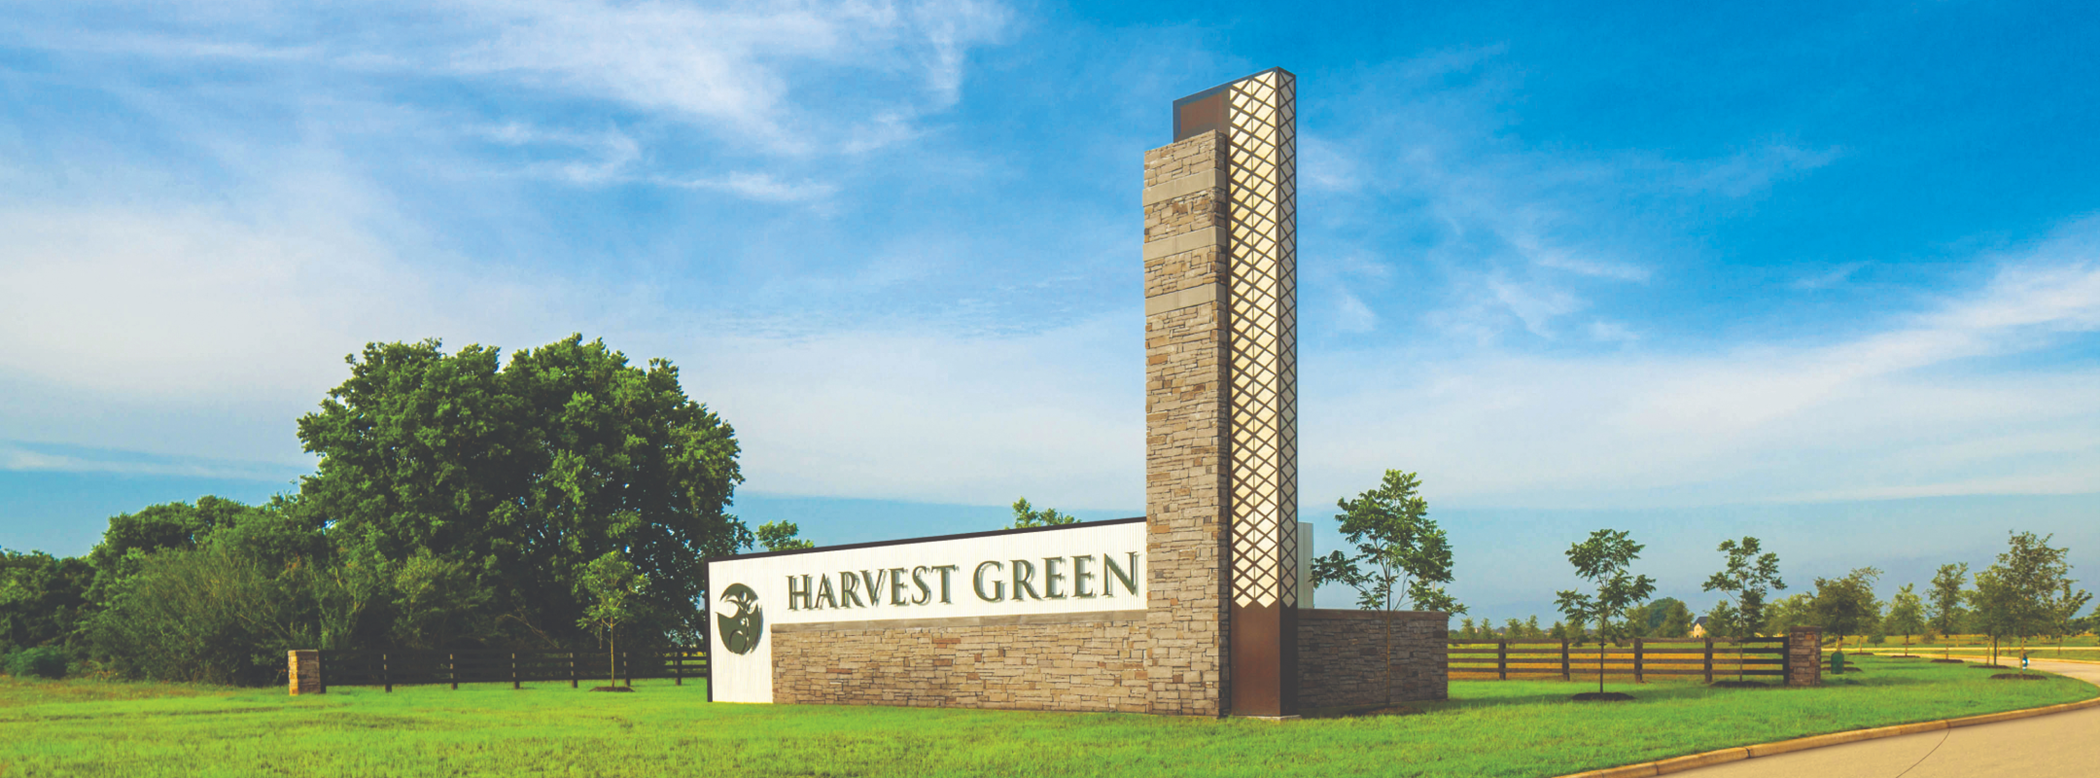 Harvest Green Entry Monument